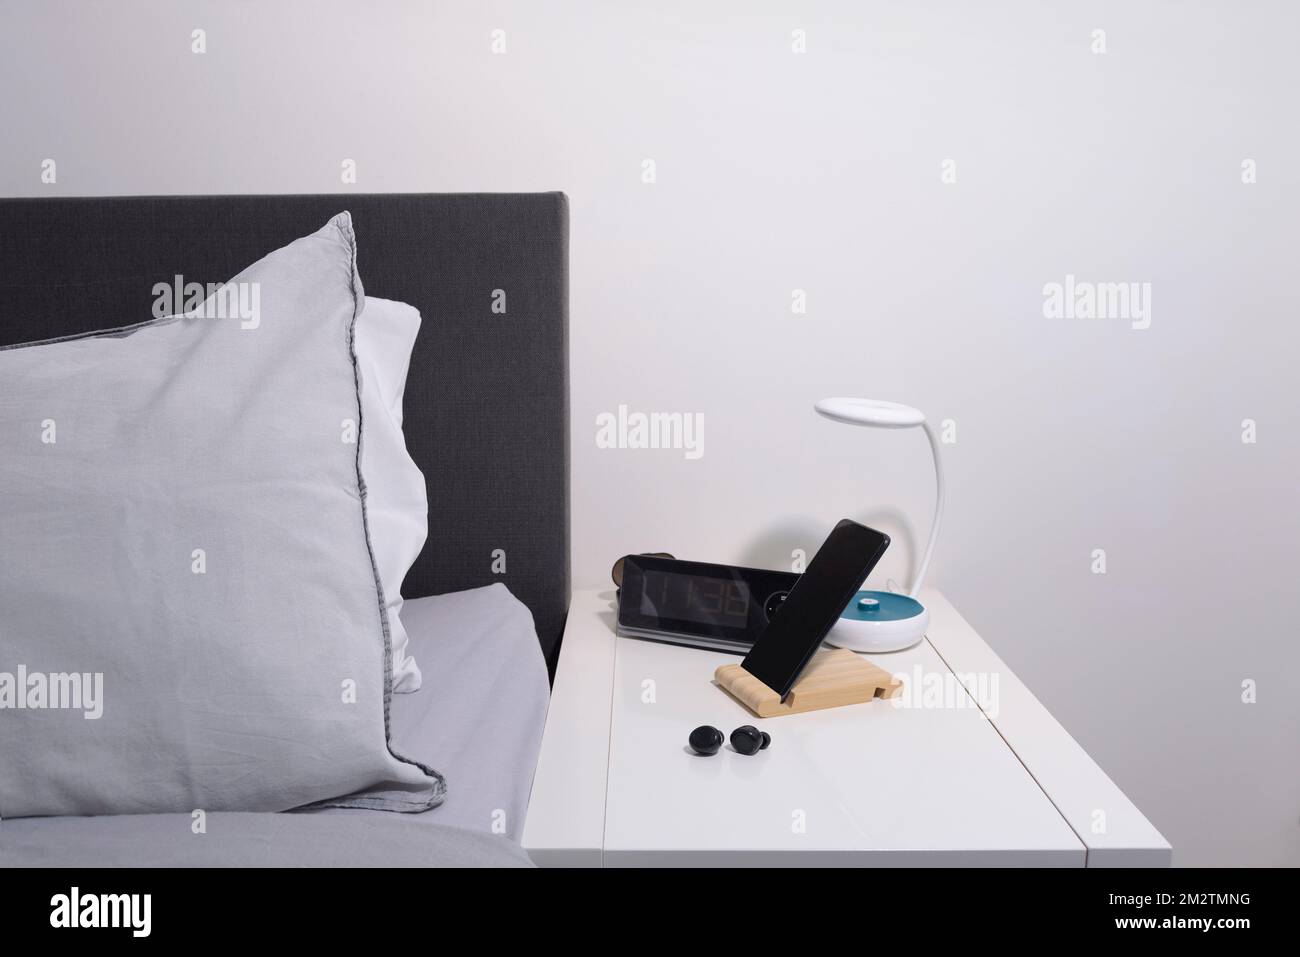 Schlafzimmer-Akten. Smartphone auf dem Nachttisch mit Lampe, Headset, Uhr und Bett. Stockfoto